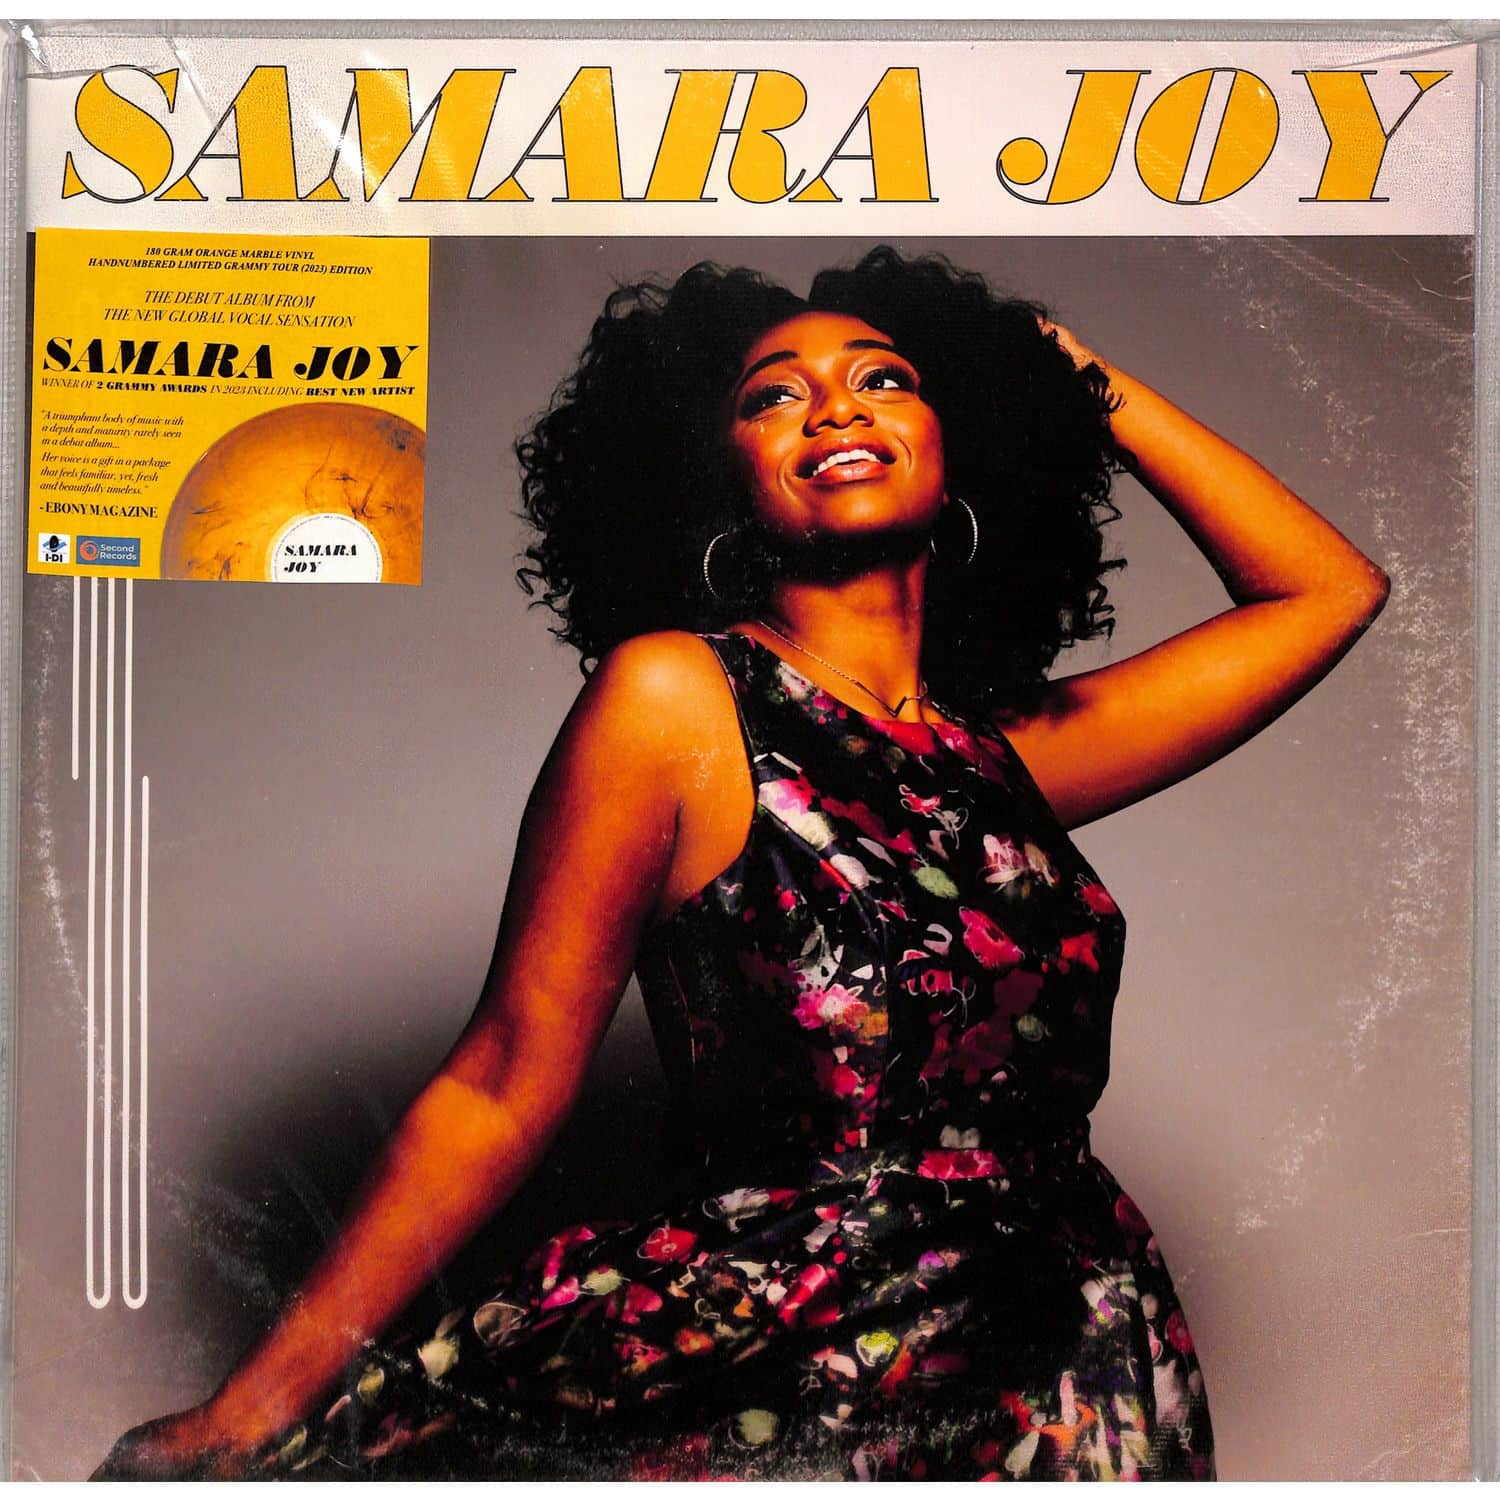 Samara Joy - SAMARA JOY 